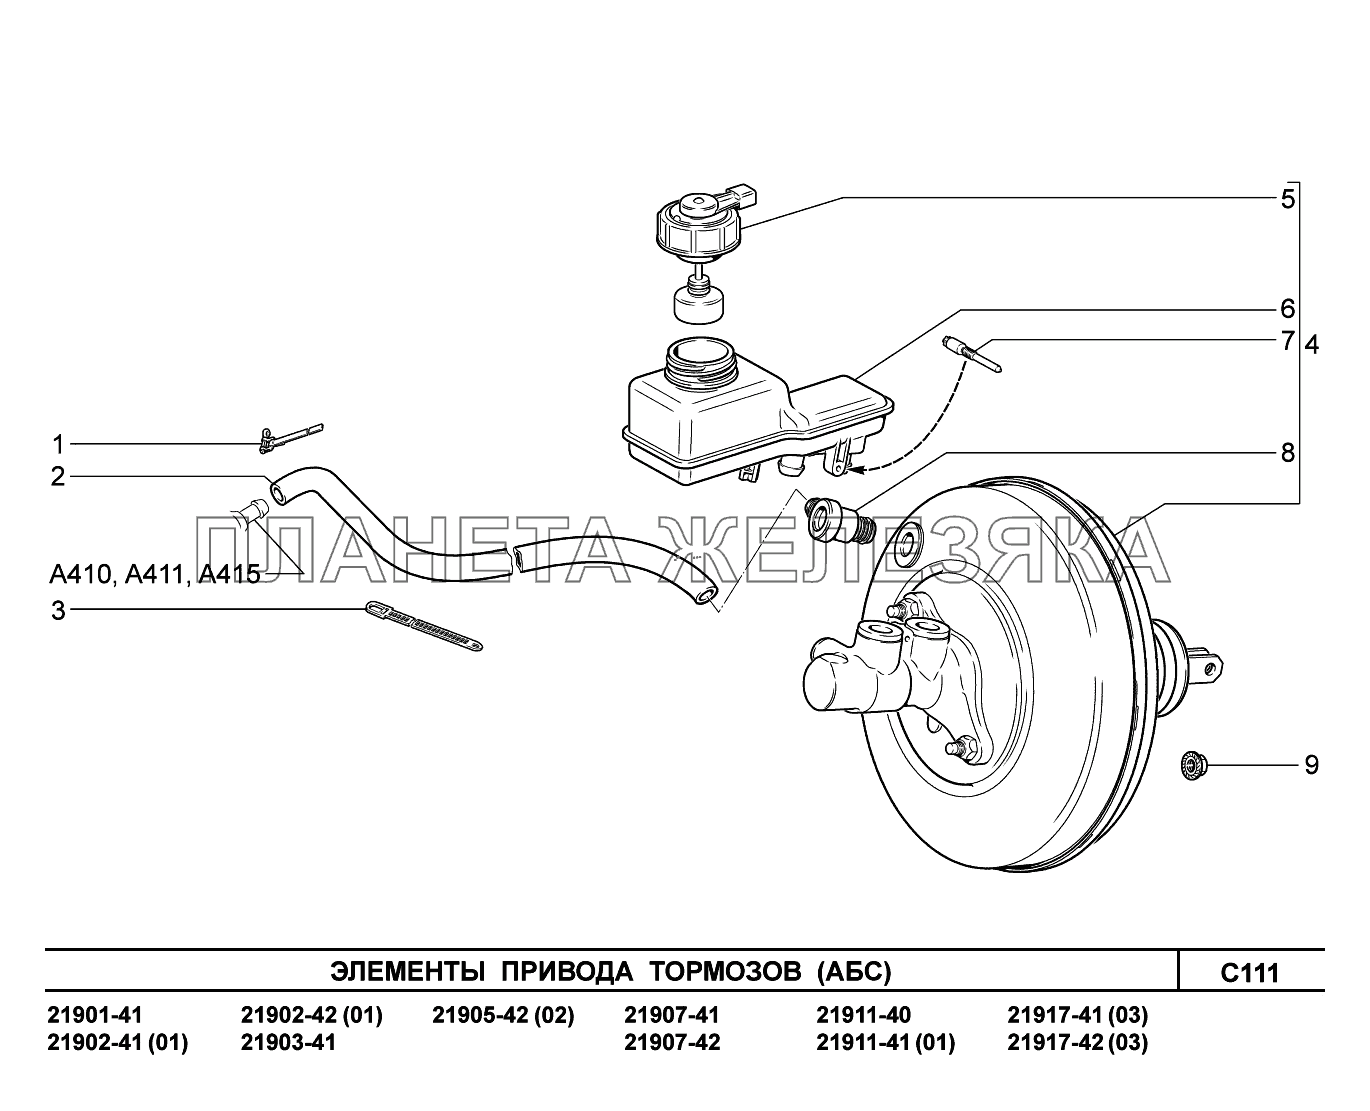 C111. Элементы привода тормозов Lada Granta-2190